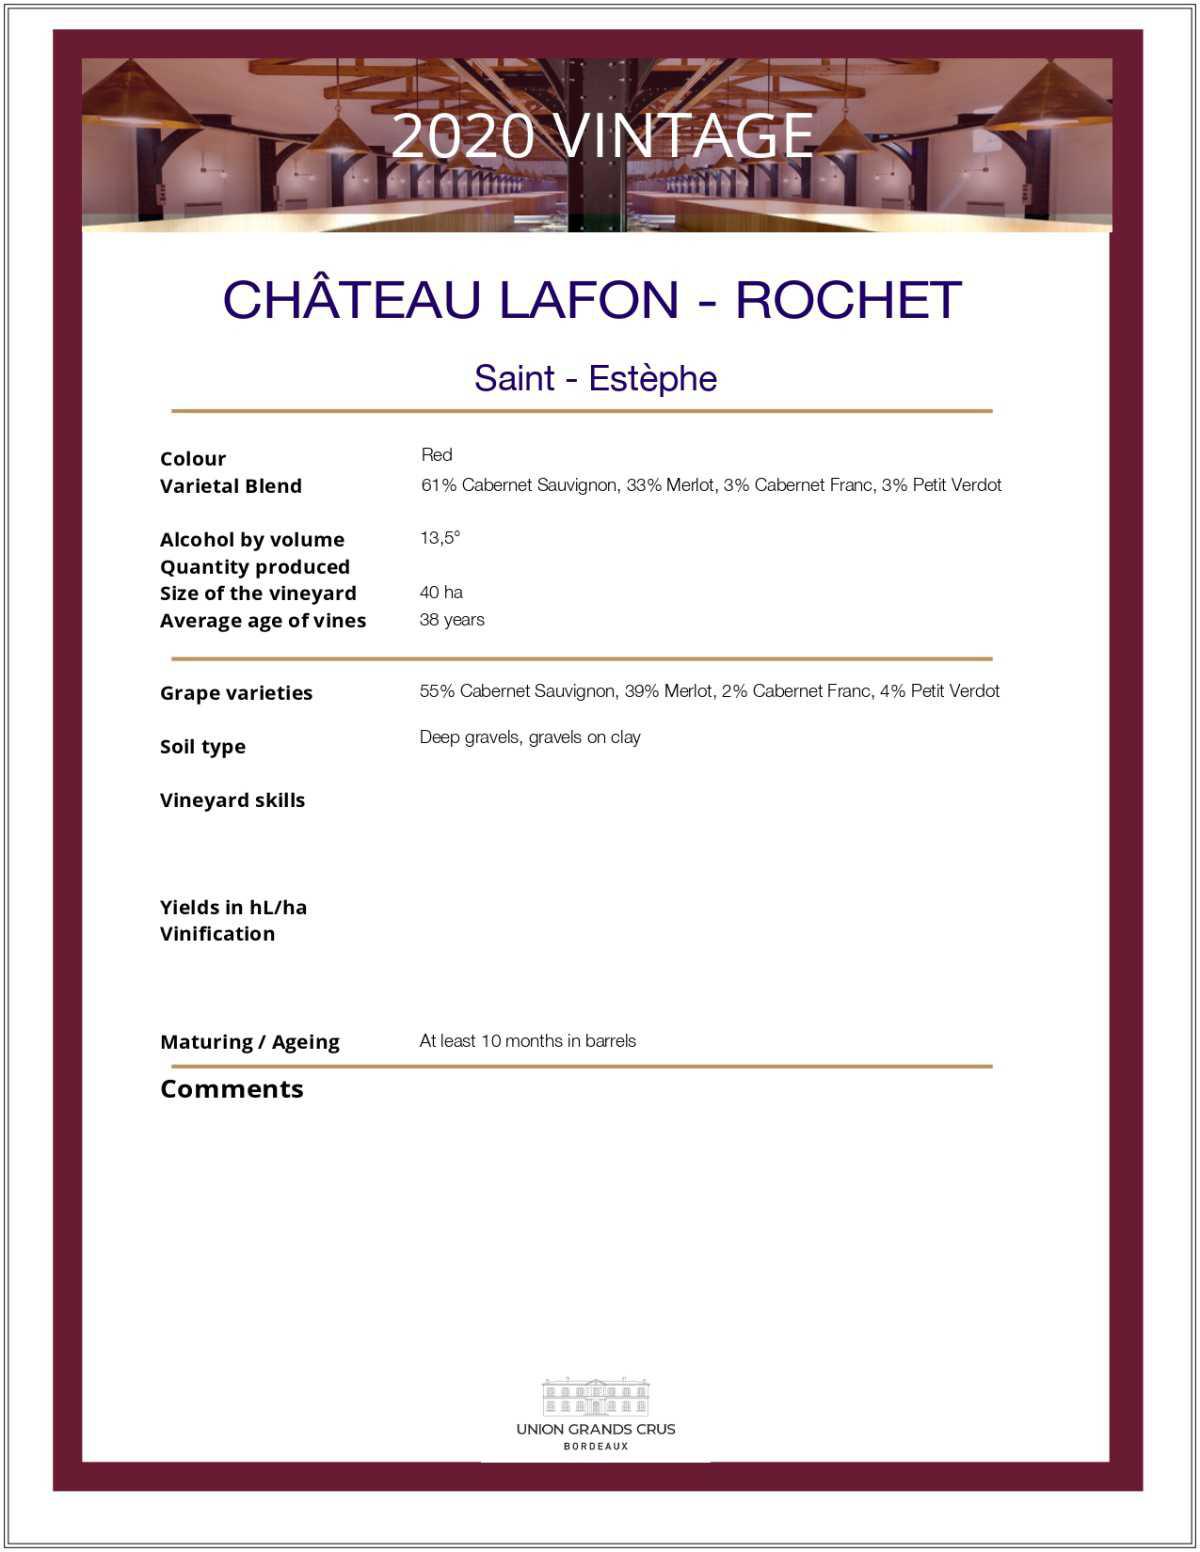 Château Lafon - Rochet